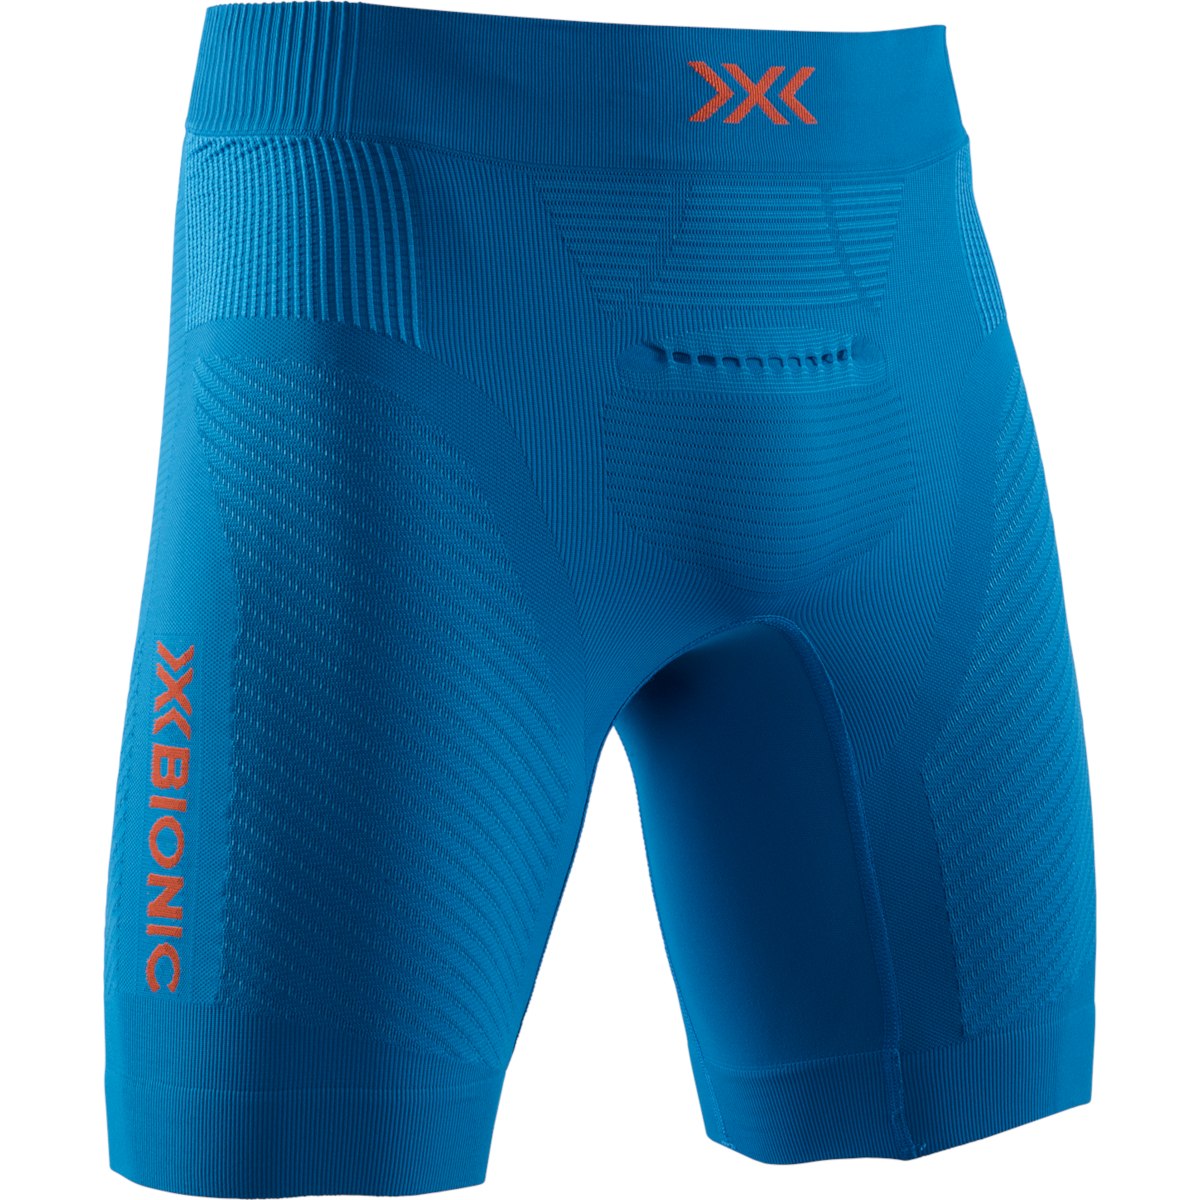 Produktbild von X-Bionic Invent 4.0 Run Speed Laufshorts für Herren - teal blue/kurkuma orange